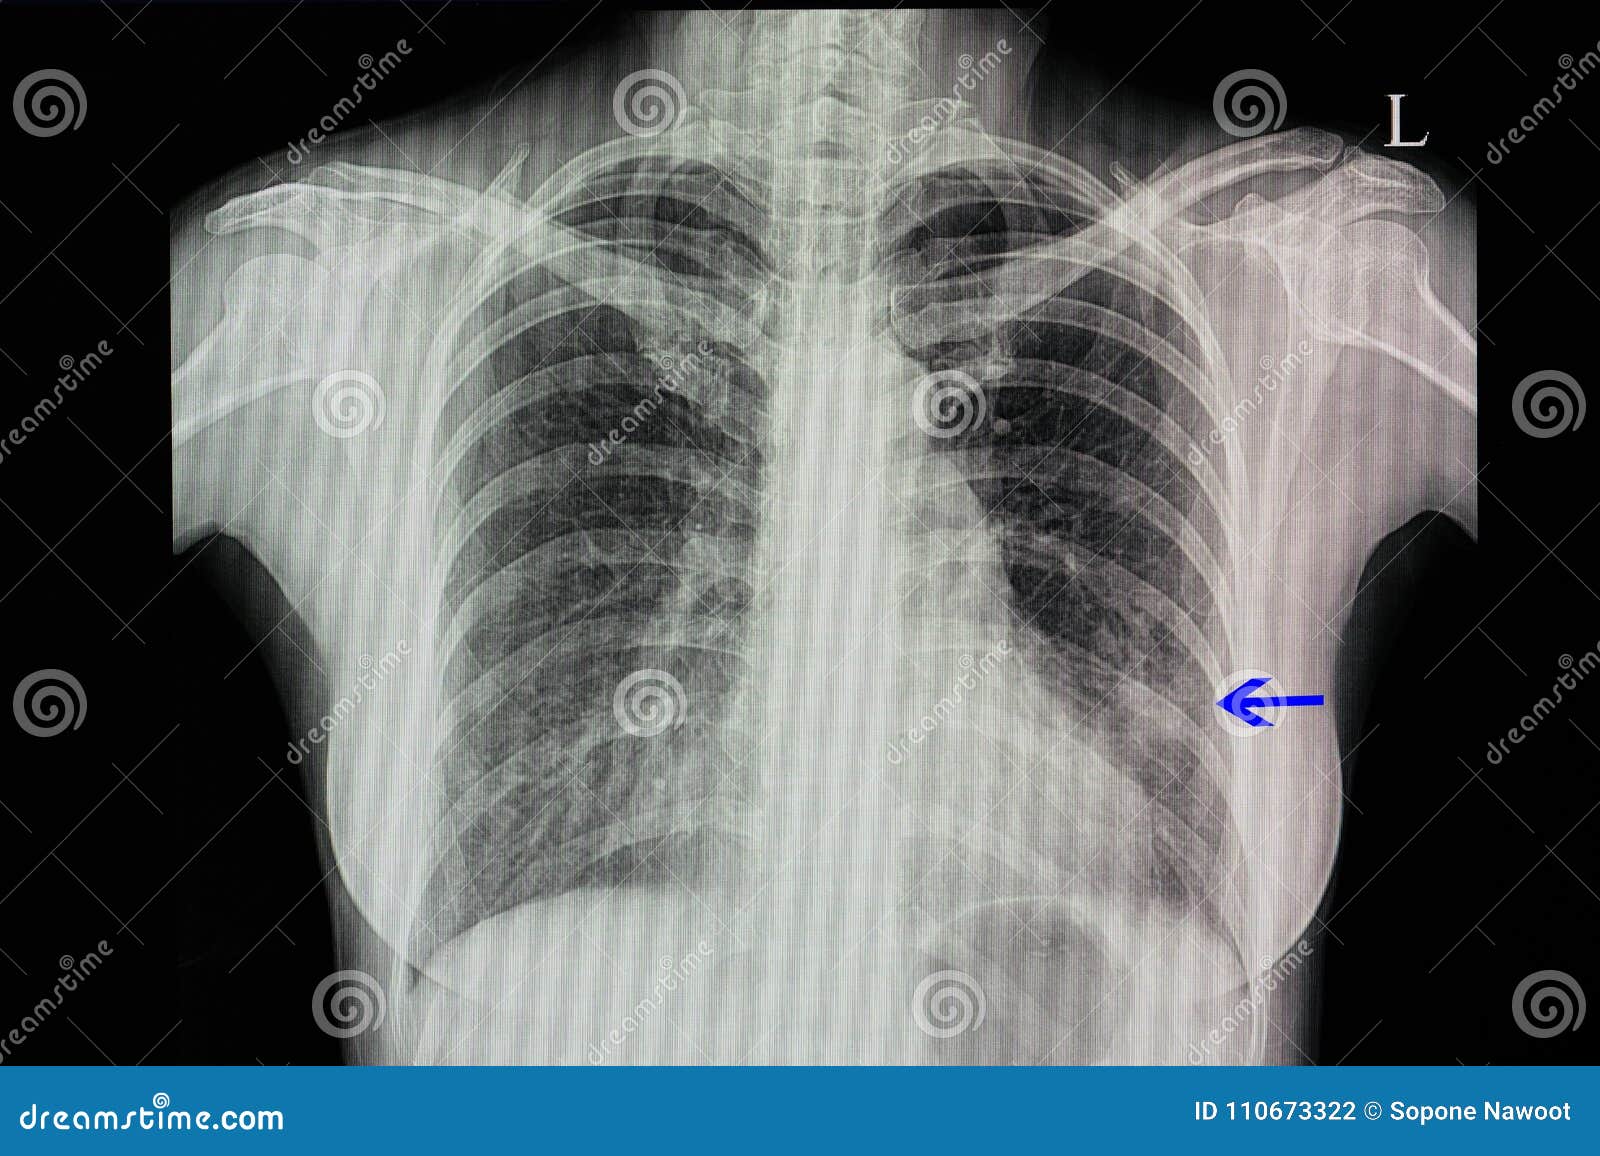 Radiographie De La Poitrine D Un Patient Presentant La Pneumonie Photo Stock Image Du Gauche Blanc